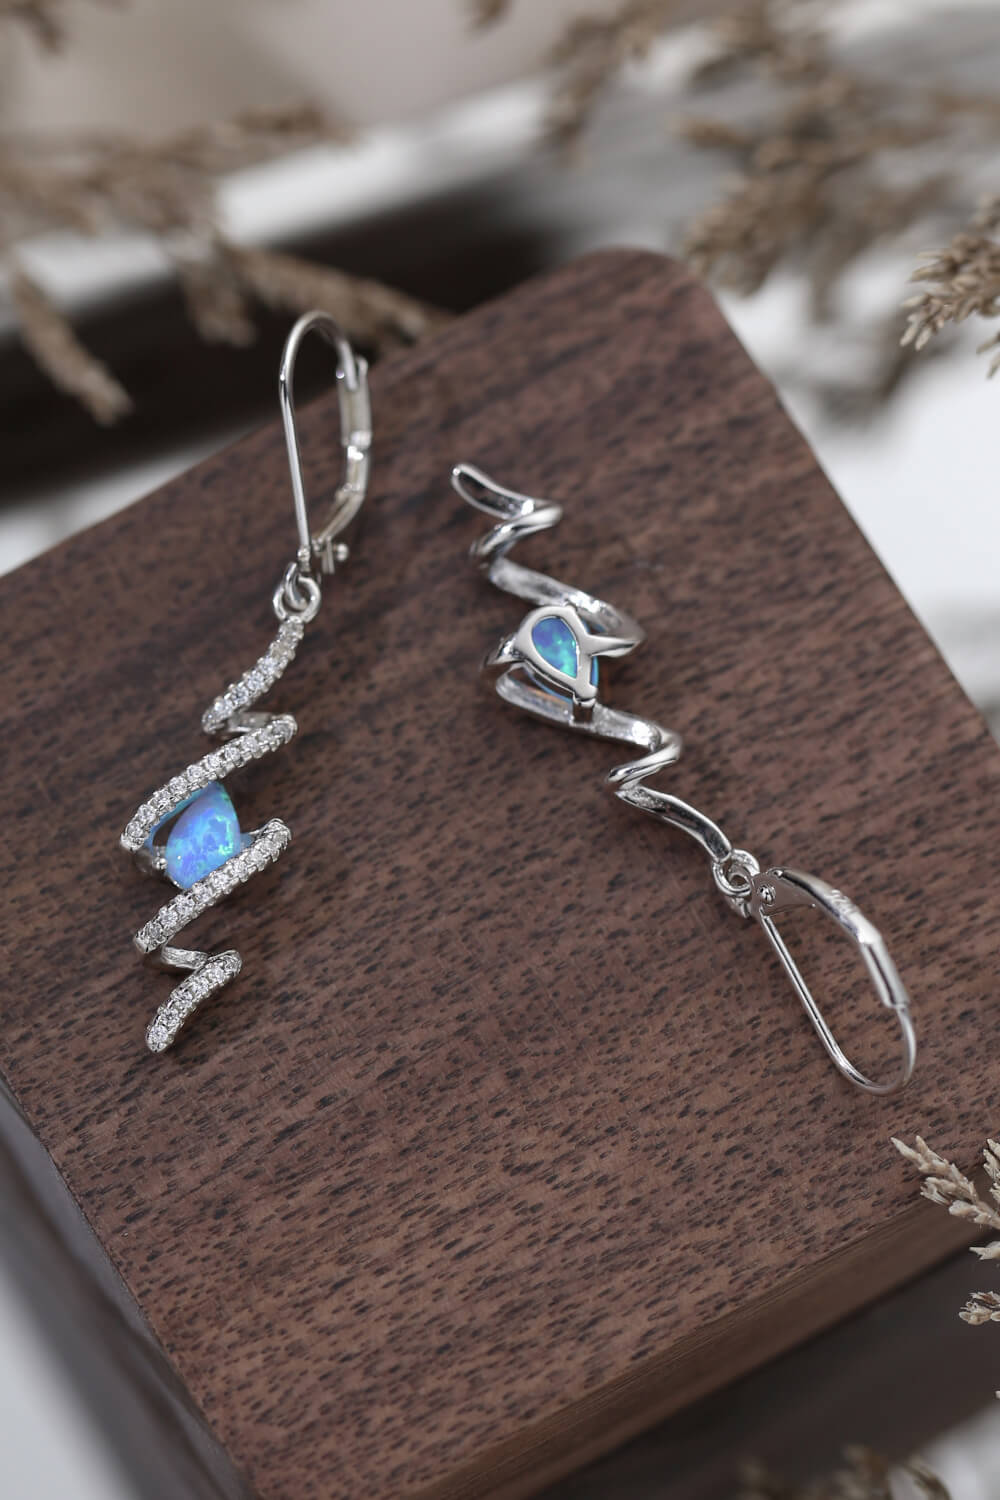 Twisted Opal Drop Earrings - Shop women apparel, Jewelry, bath & beauty products online - Arwen's Boutique